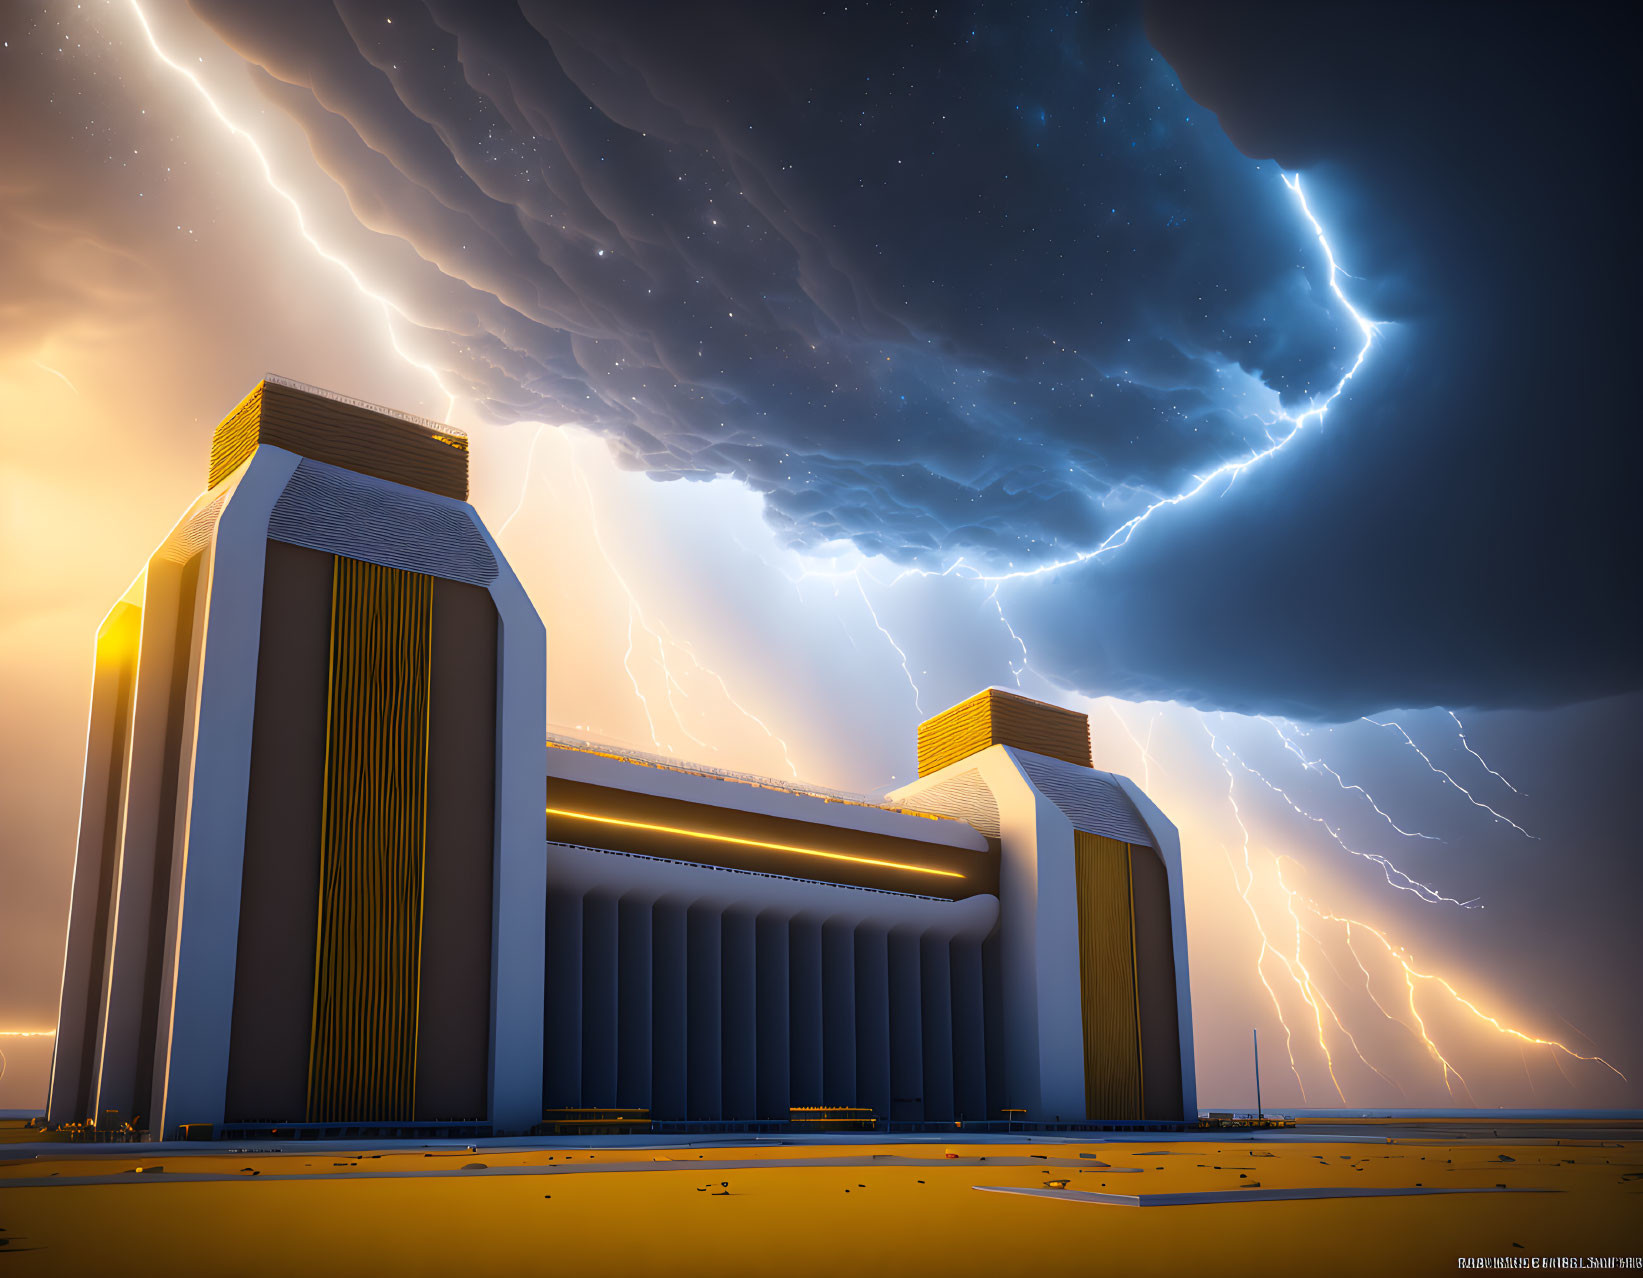 Dramatic futuristic structures in desert twilight storm